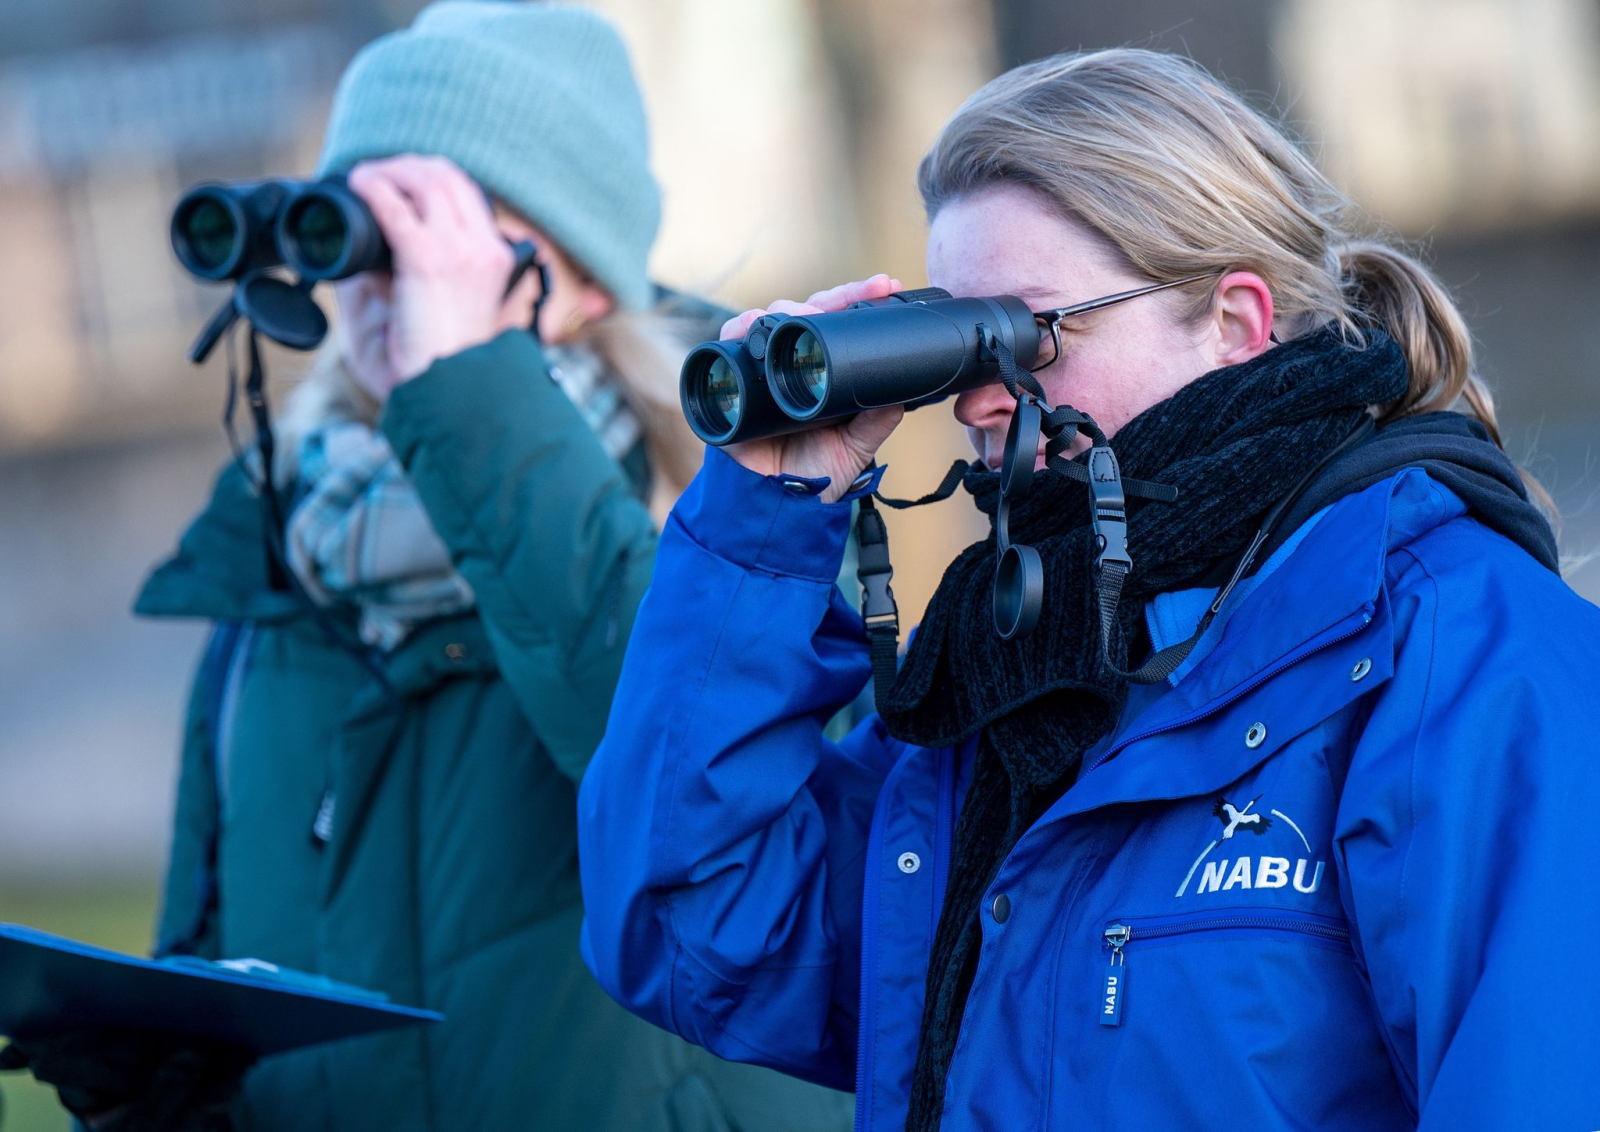 Zwei Teilnehmerinnen der Vogelzählung beobachten mit Ferngläsern die Vögel in einem Park in Berlin.